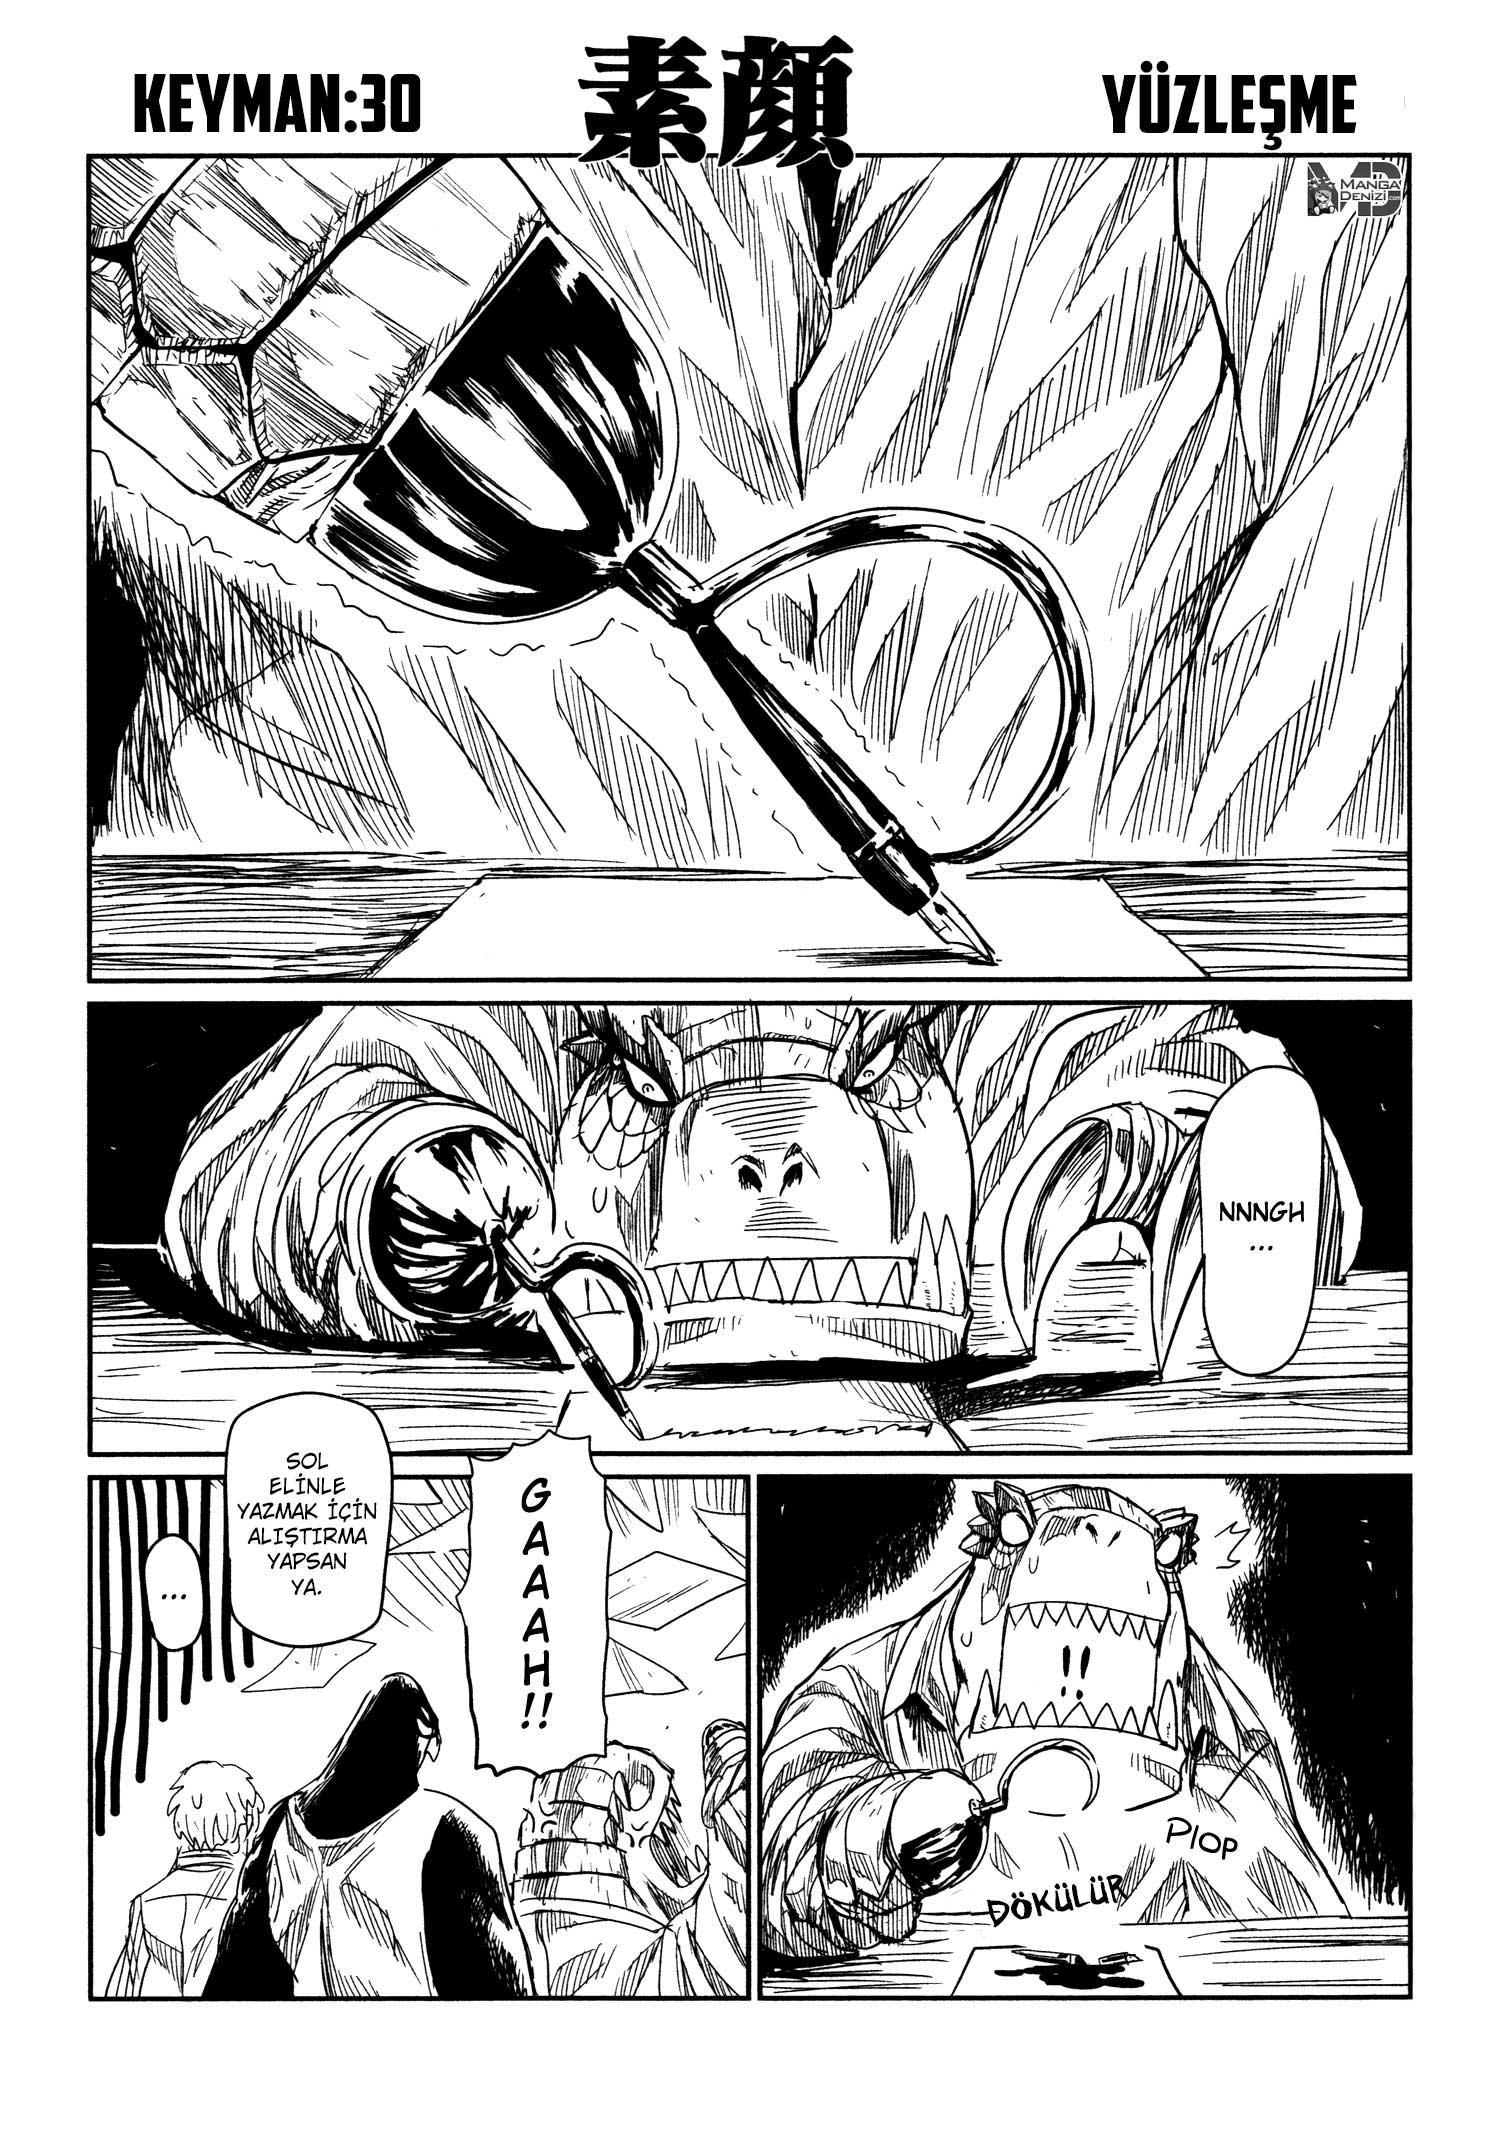 Keyman: The Hand of Judgement mangasının 30 bölümünün 2. sayfasını okuyorsunuz.